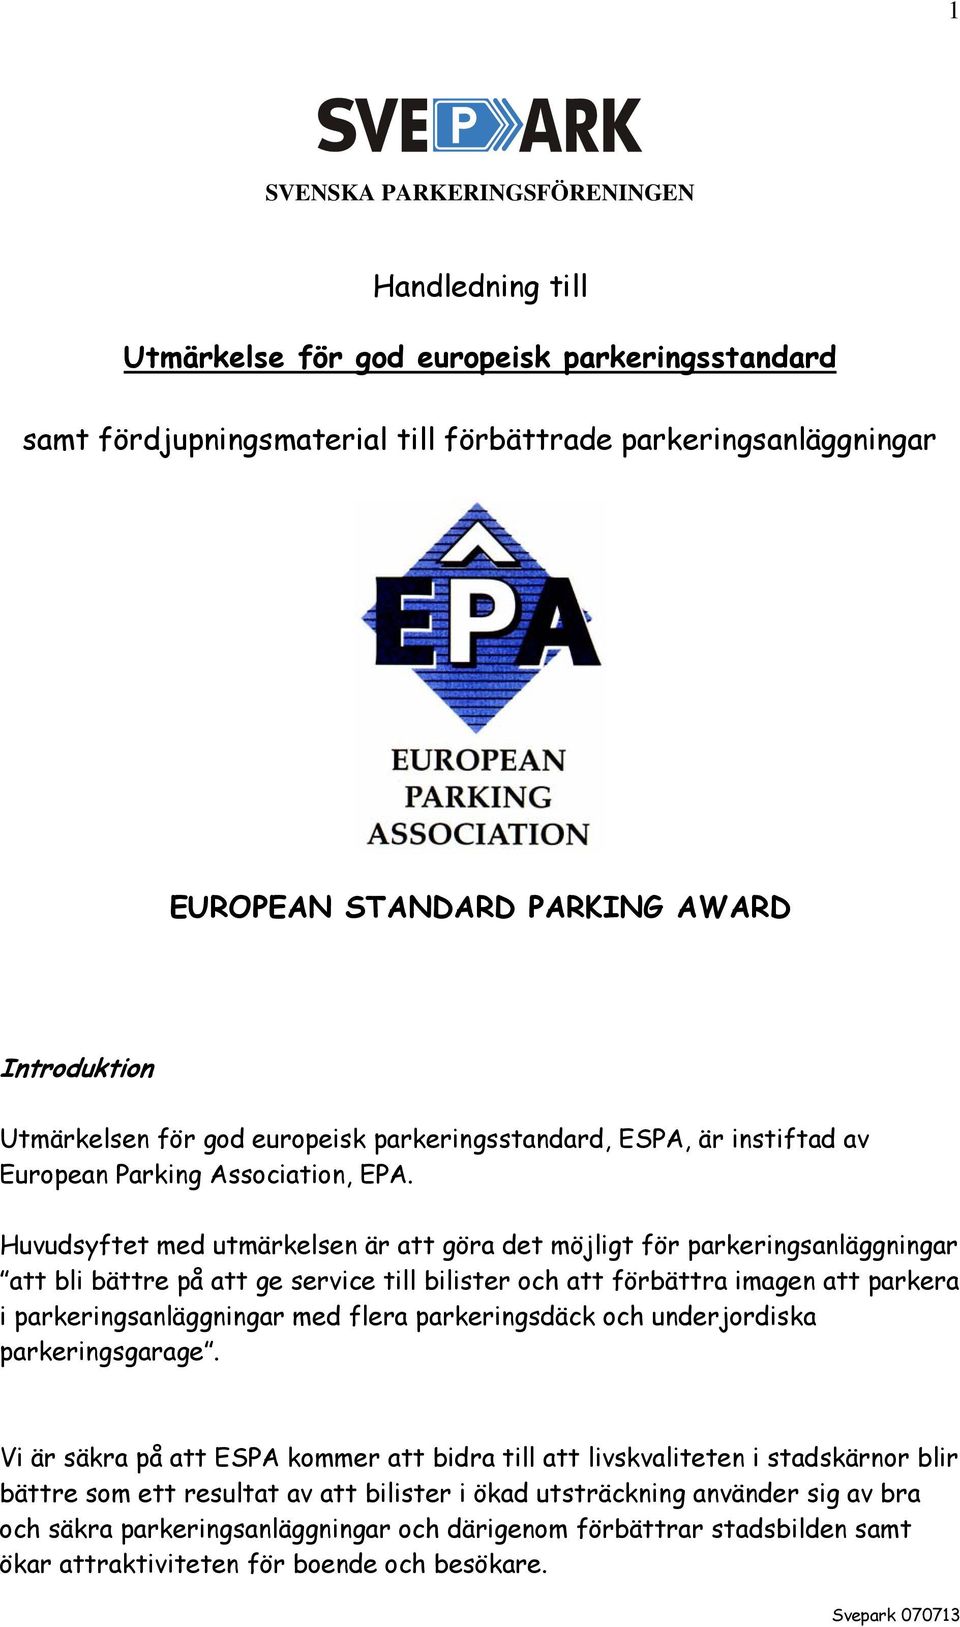 Huvudsyftet med utmärkelsen är att göra det möjligt för parkeringsanläggningar att bli bättre på att ge service till bilister och att förbättra imagen att parkera i parkeringsanläggningar med flera